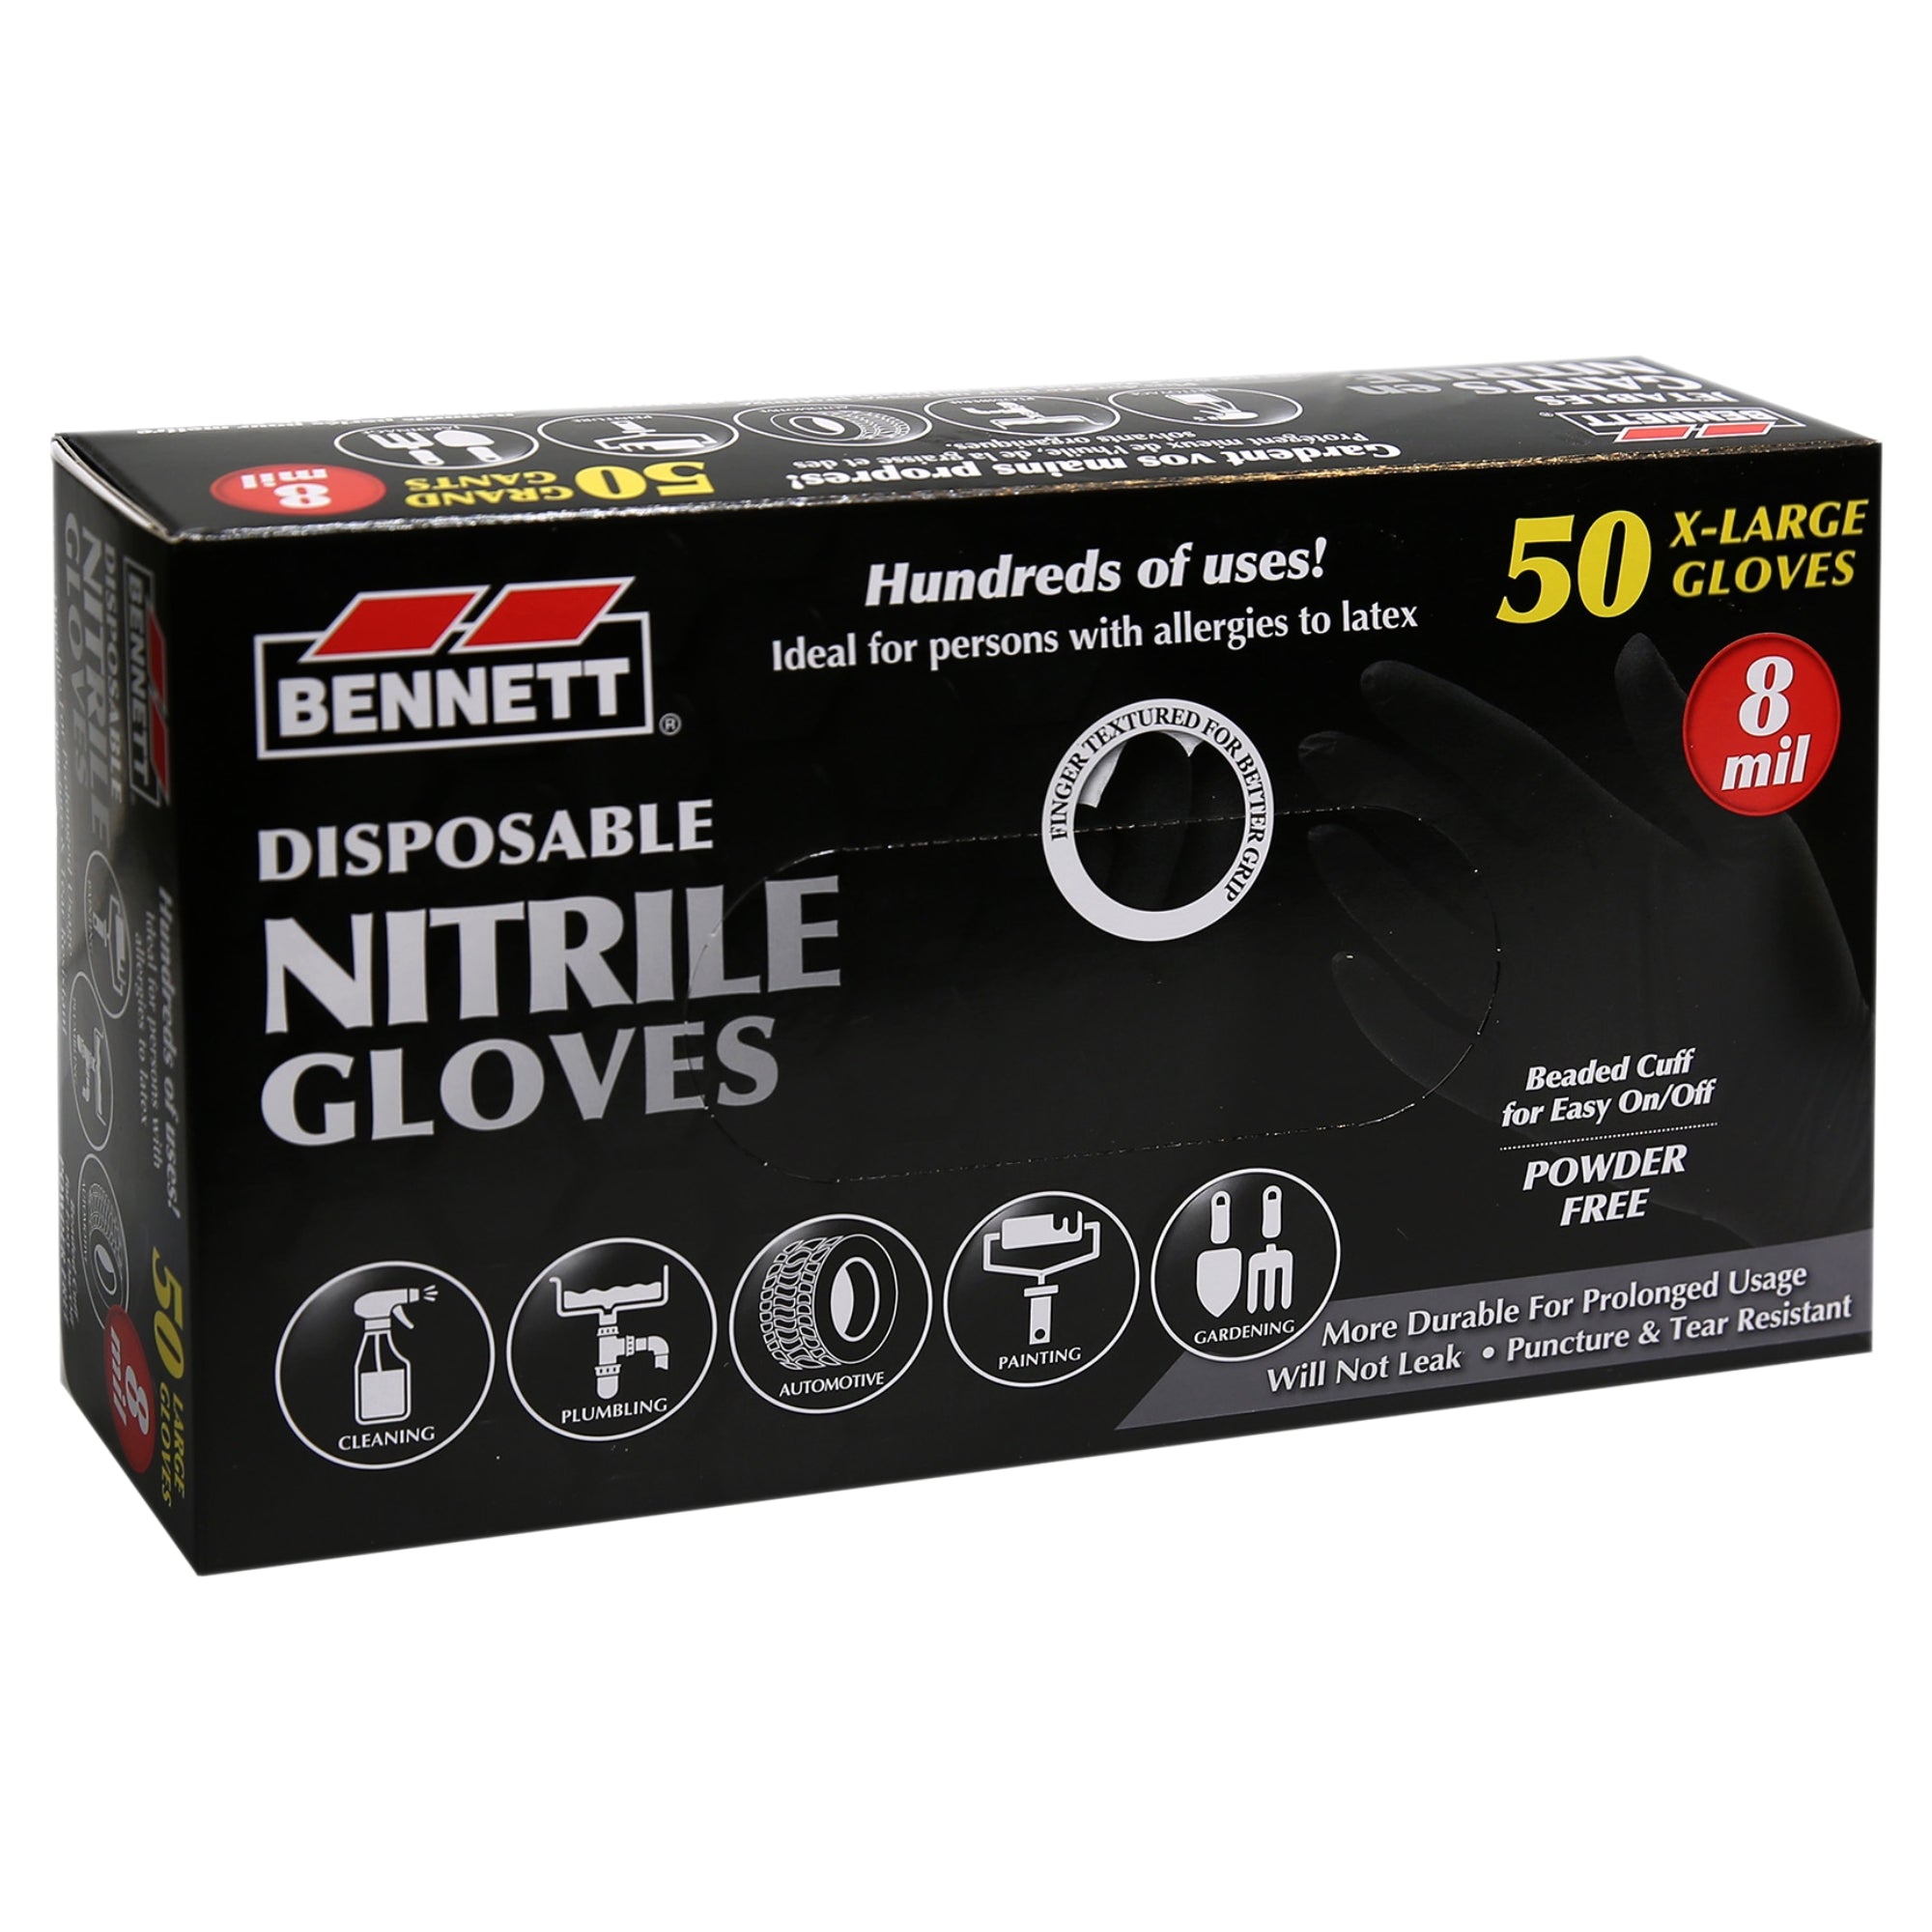 Guantes desechables de nitrilo negro Bennett 8mil - Caja de 50